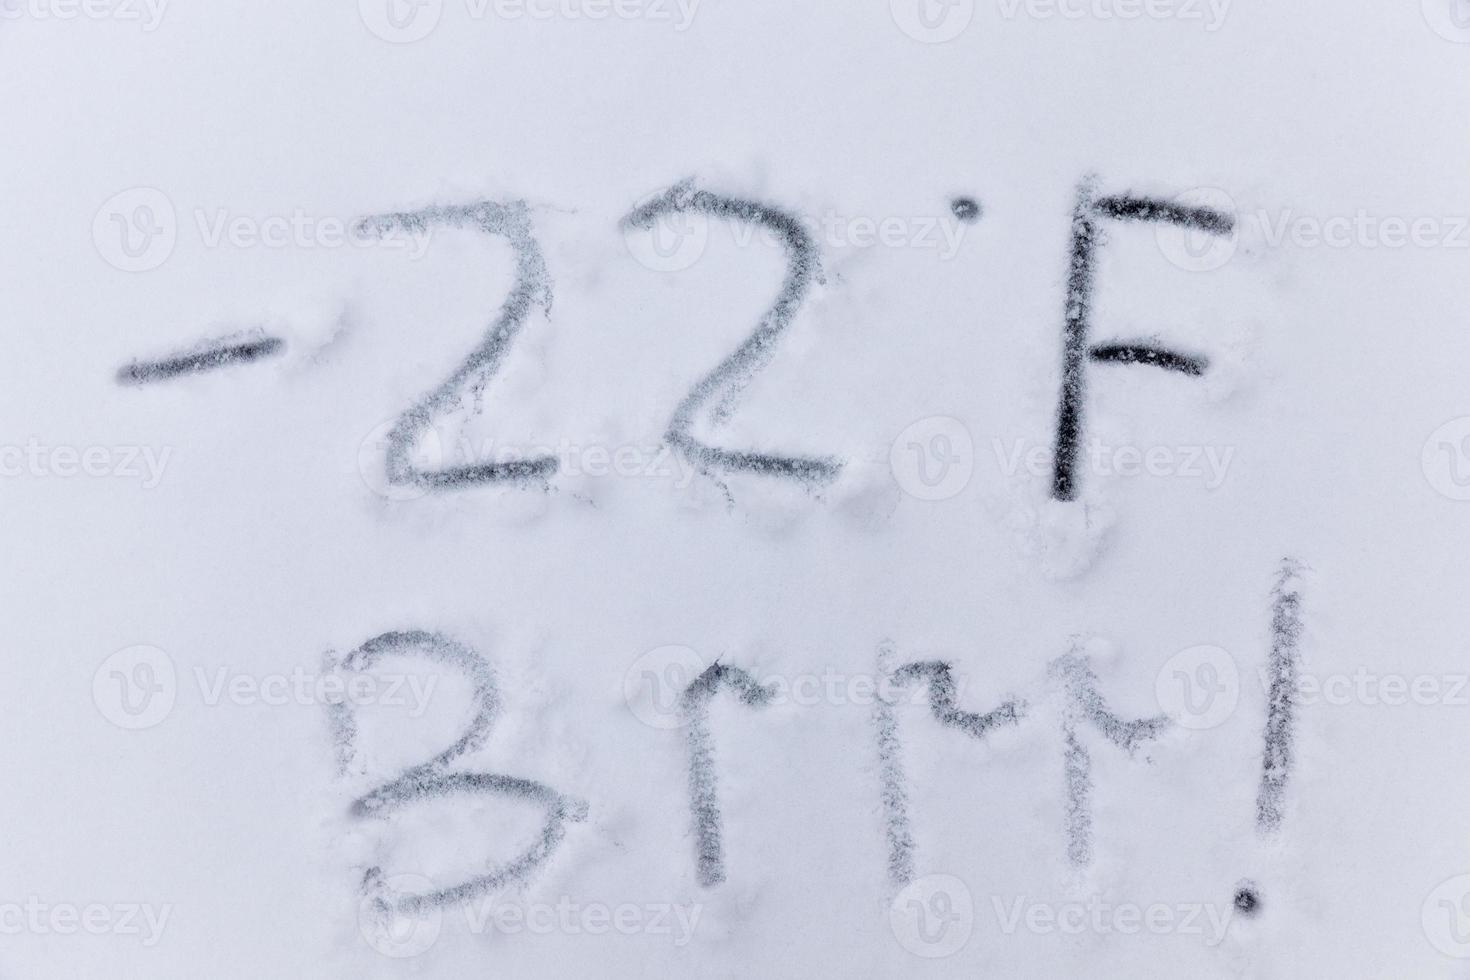 Auf den Schnee gezeichnet, Temperatursymbole, die negatives, sehr kaltes Wetter bezeichnen foto